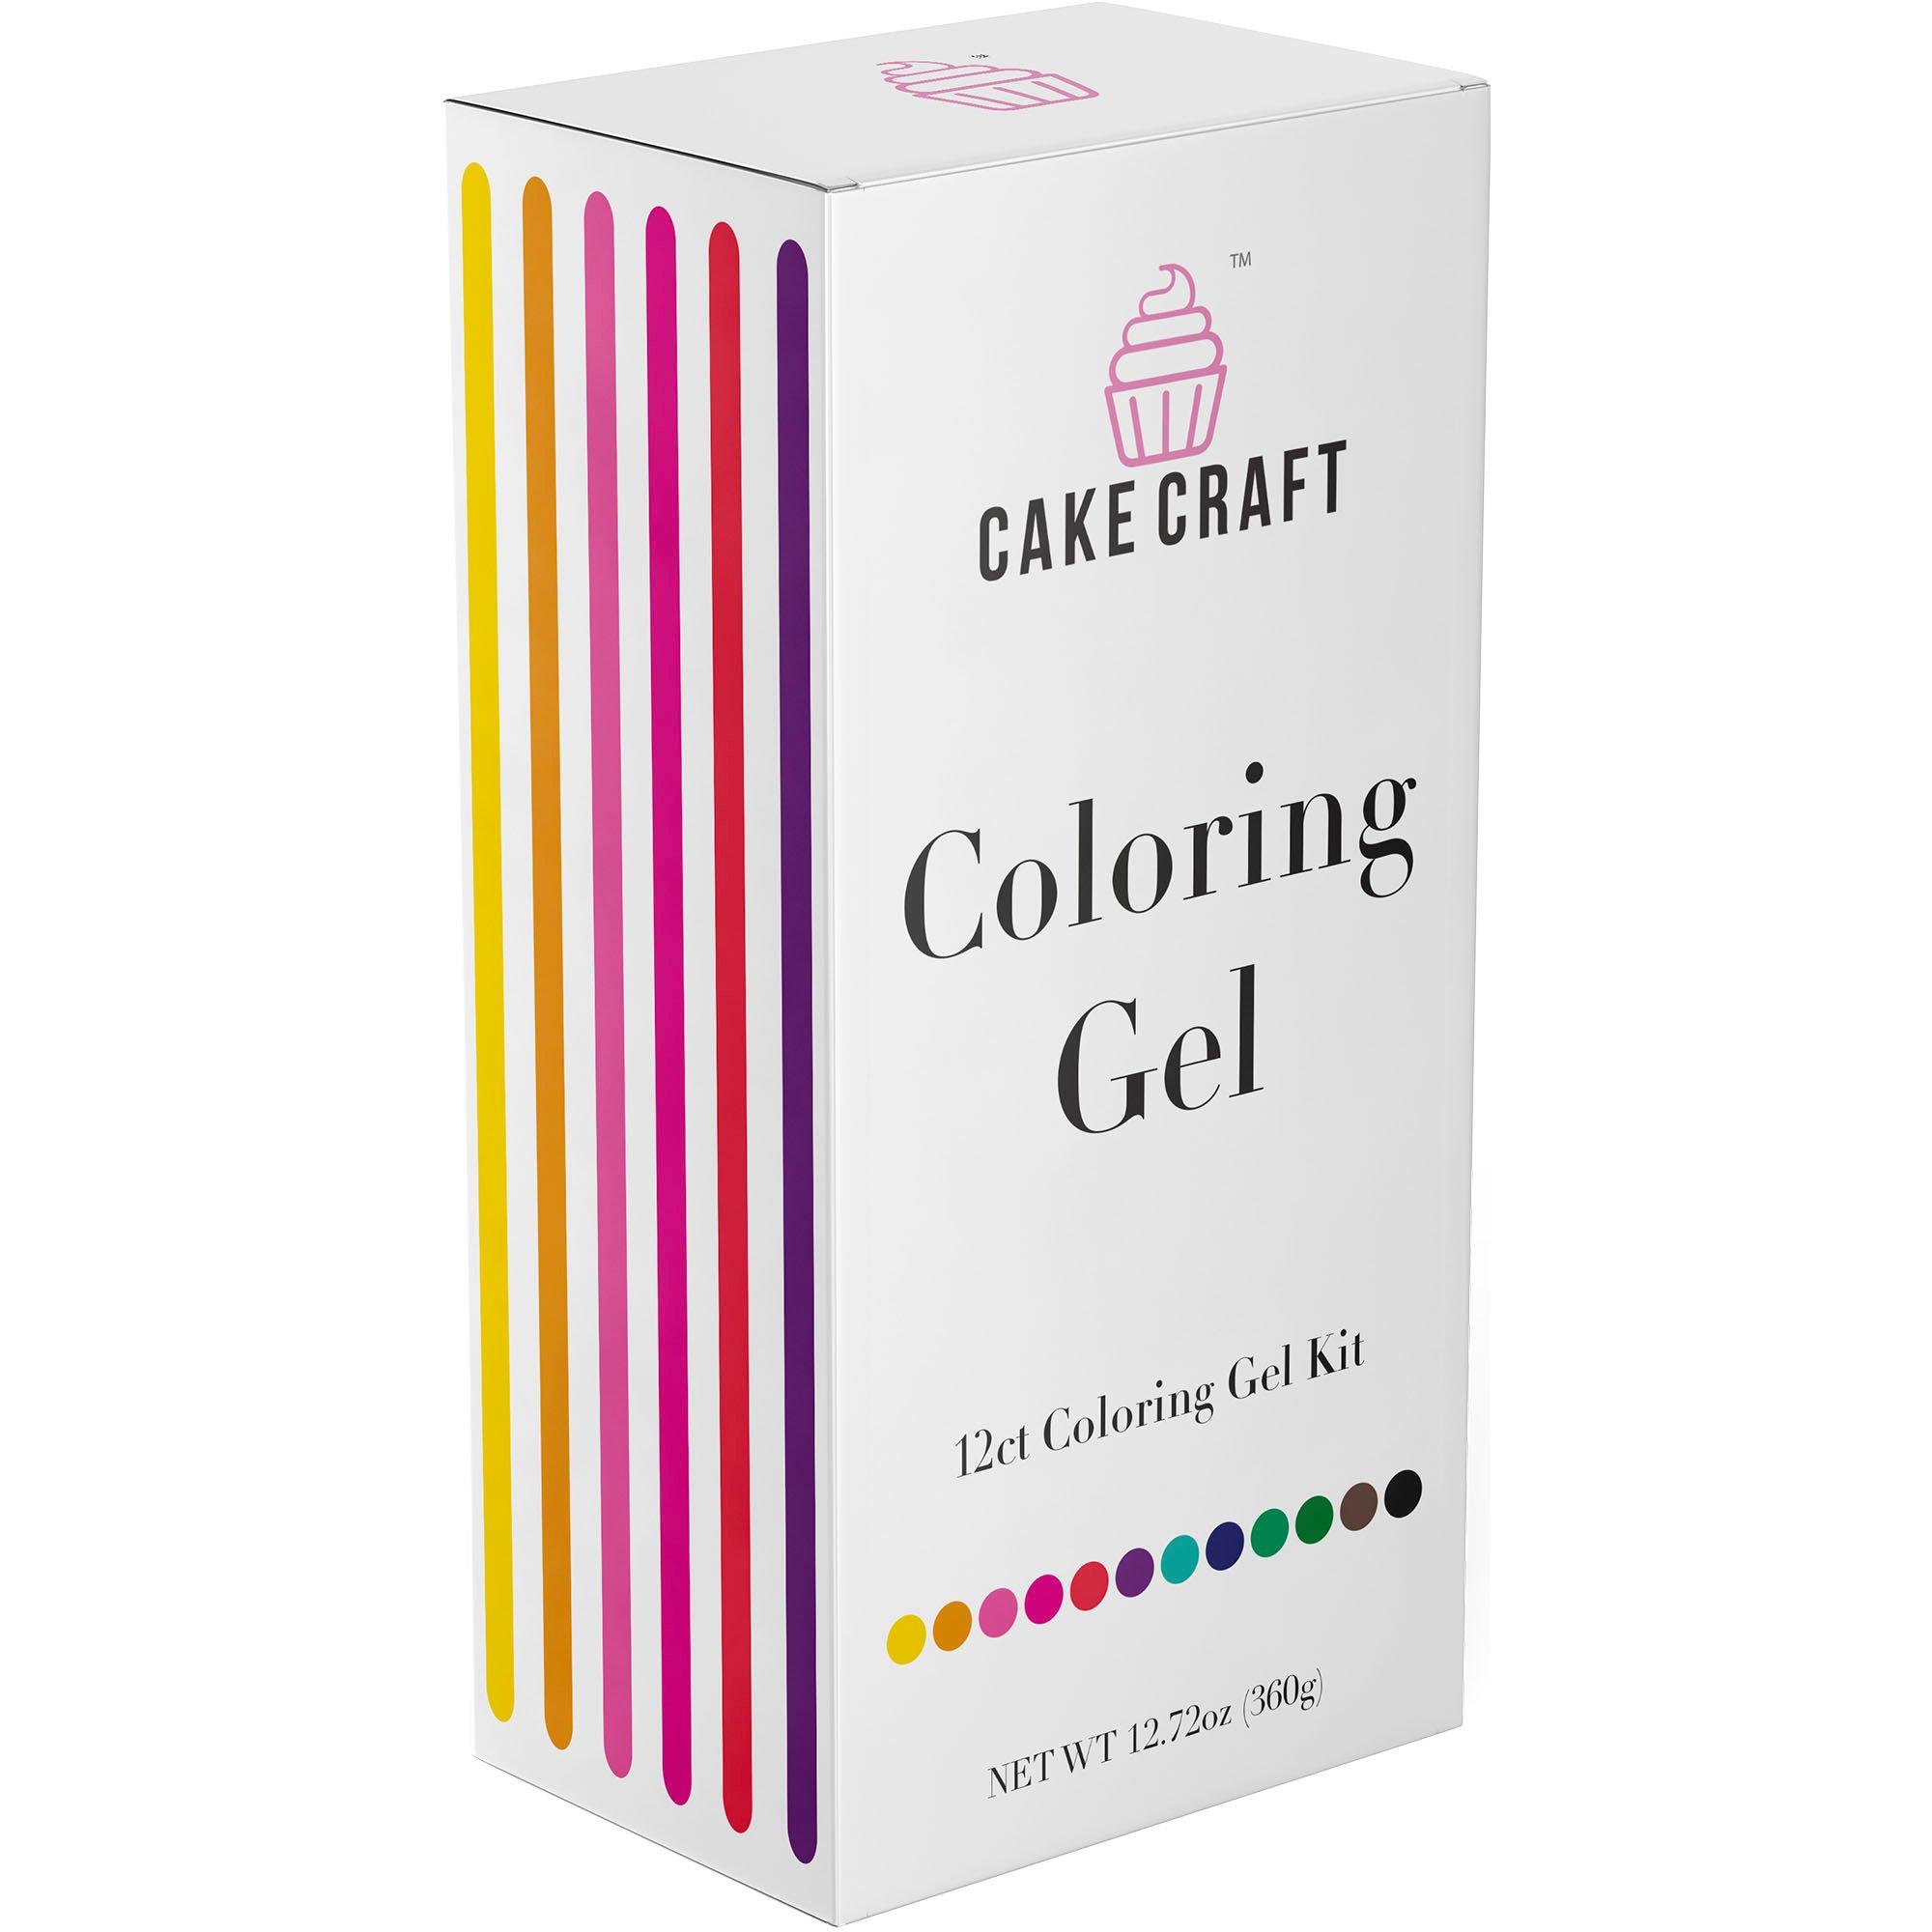 Cake Craft Coloring Gel Kit, 12.72oz, 12pc